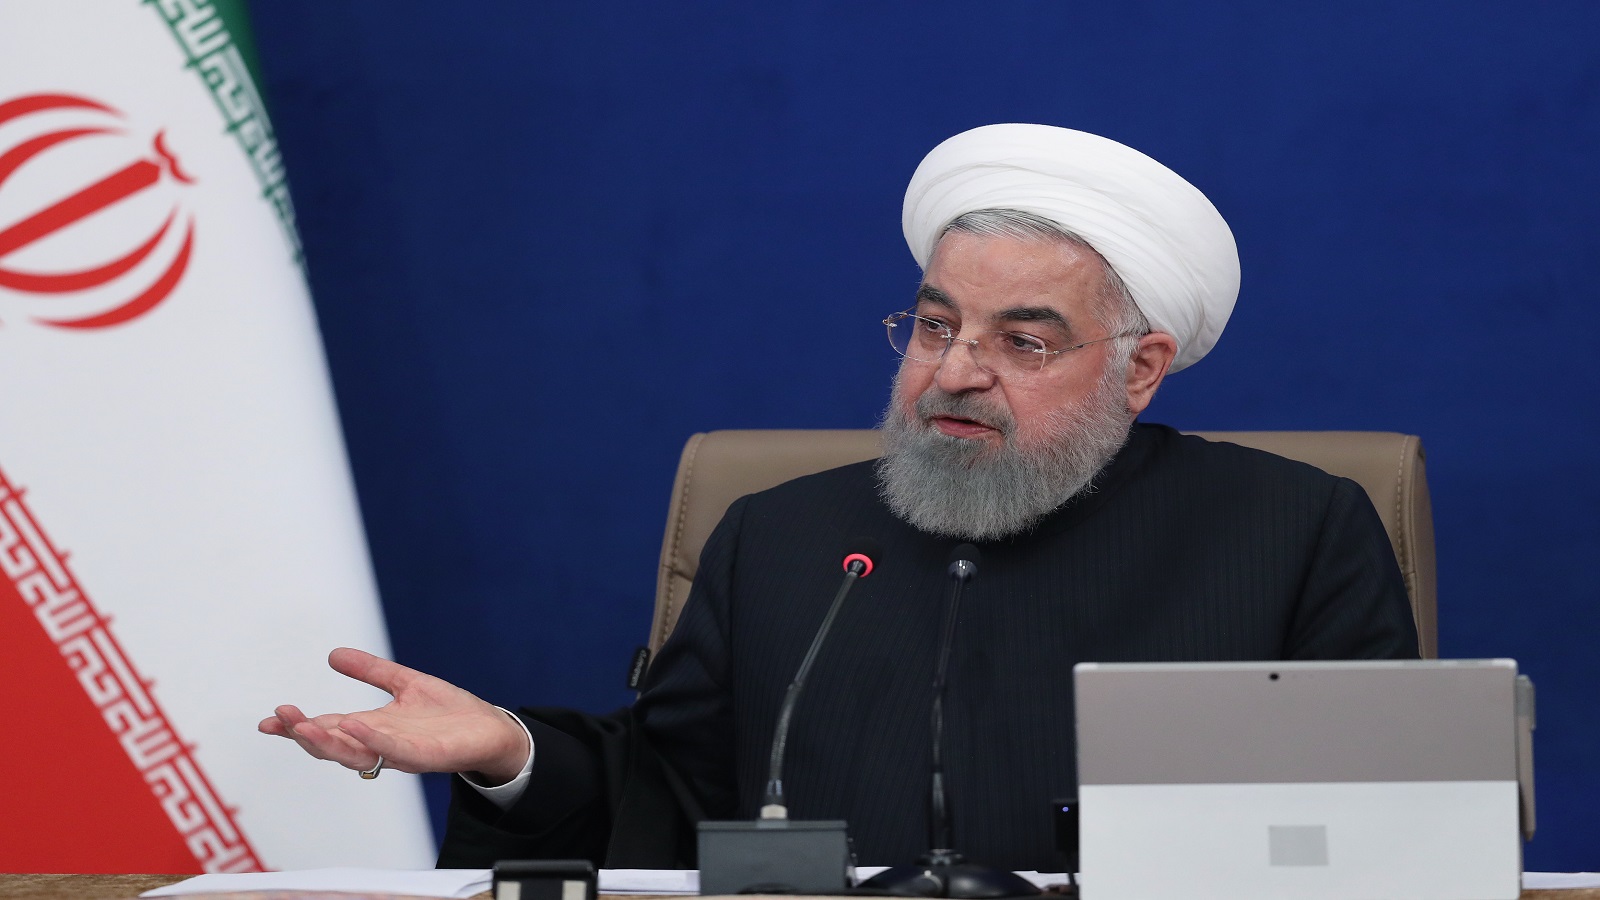 البرلمان الايراني يحيل روحاني إلى القضاء..لتوقيعه معاهدة ثقافية!